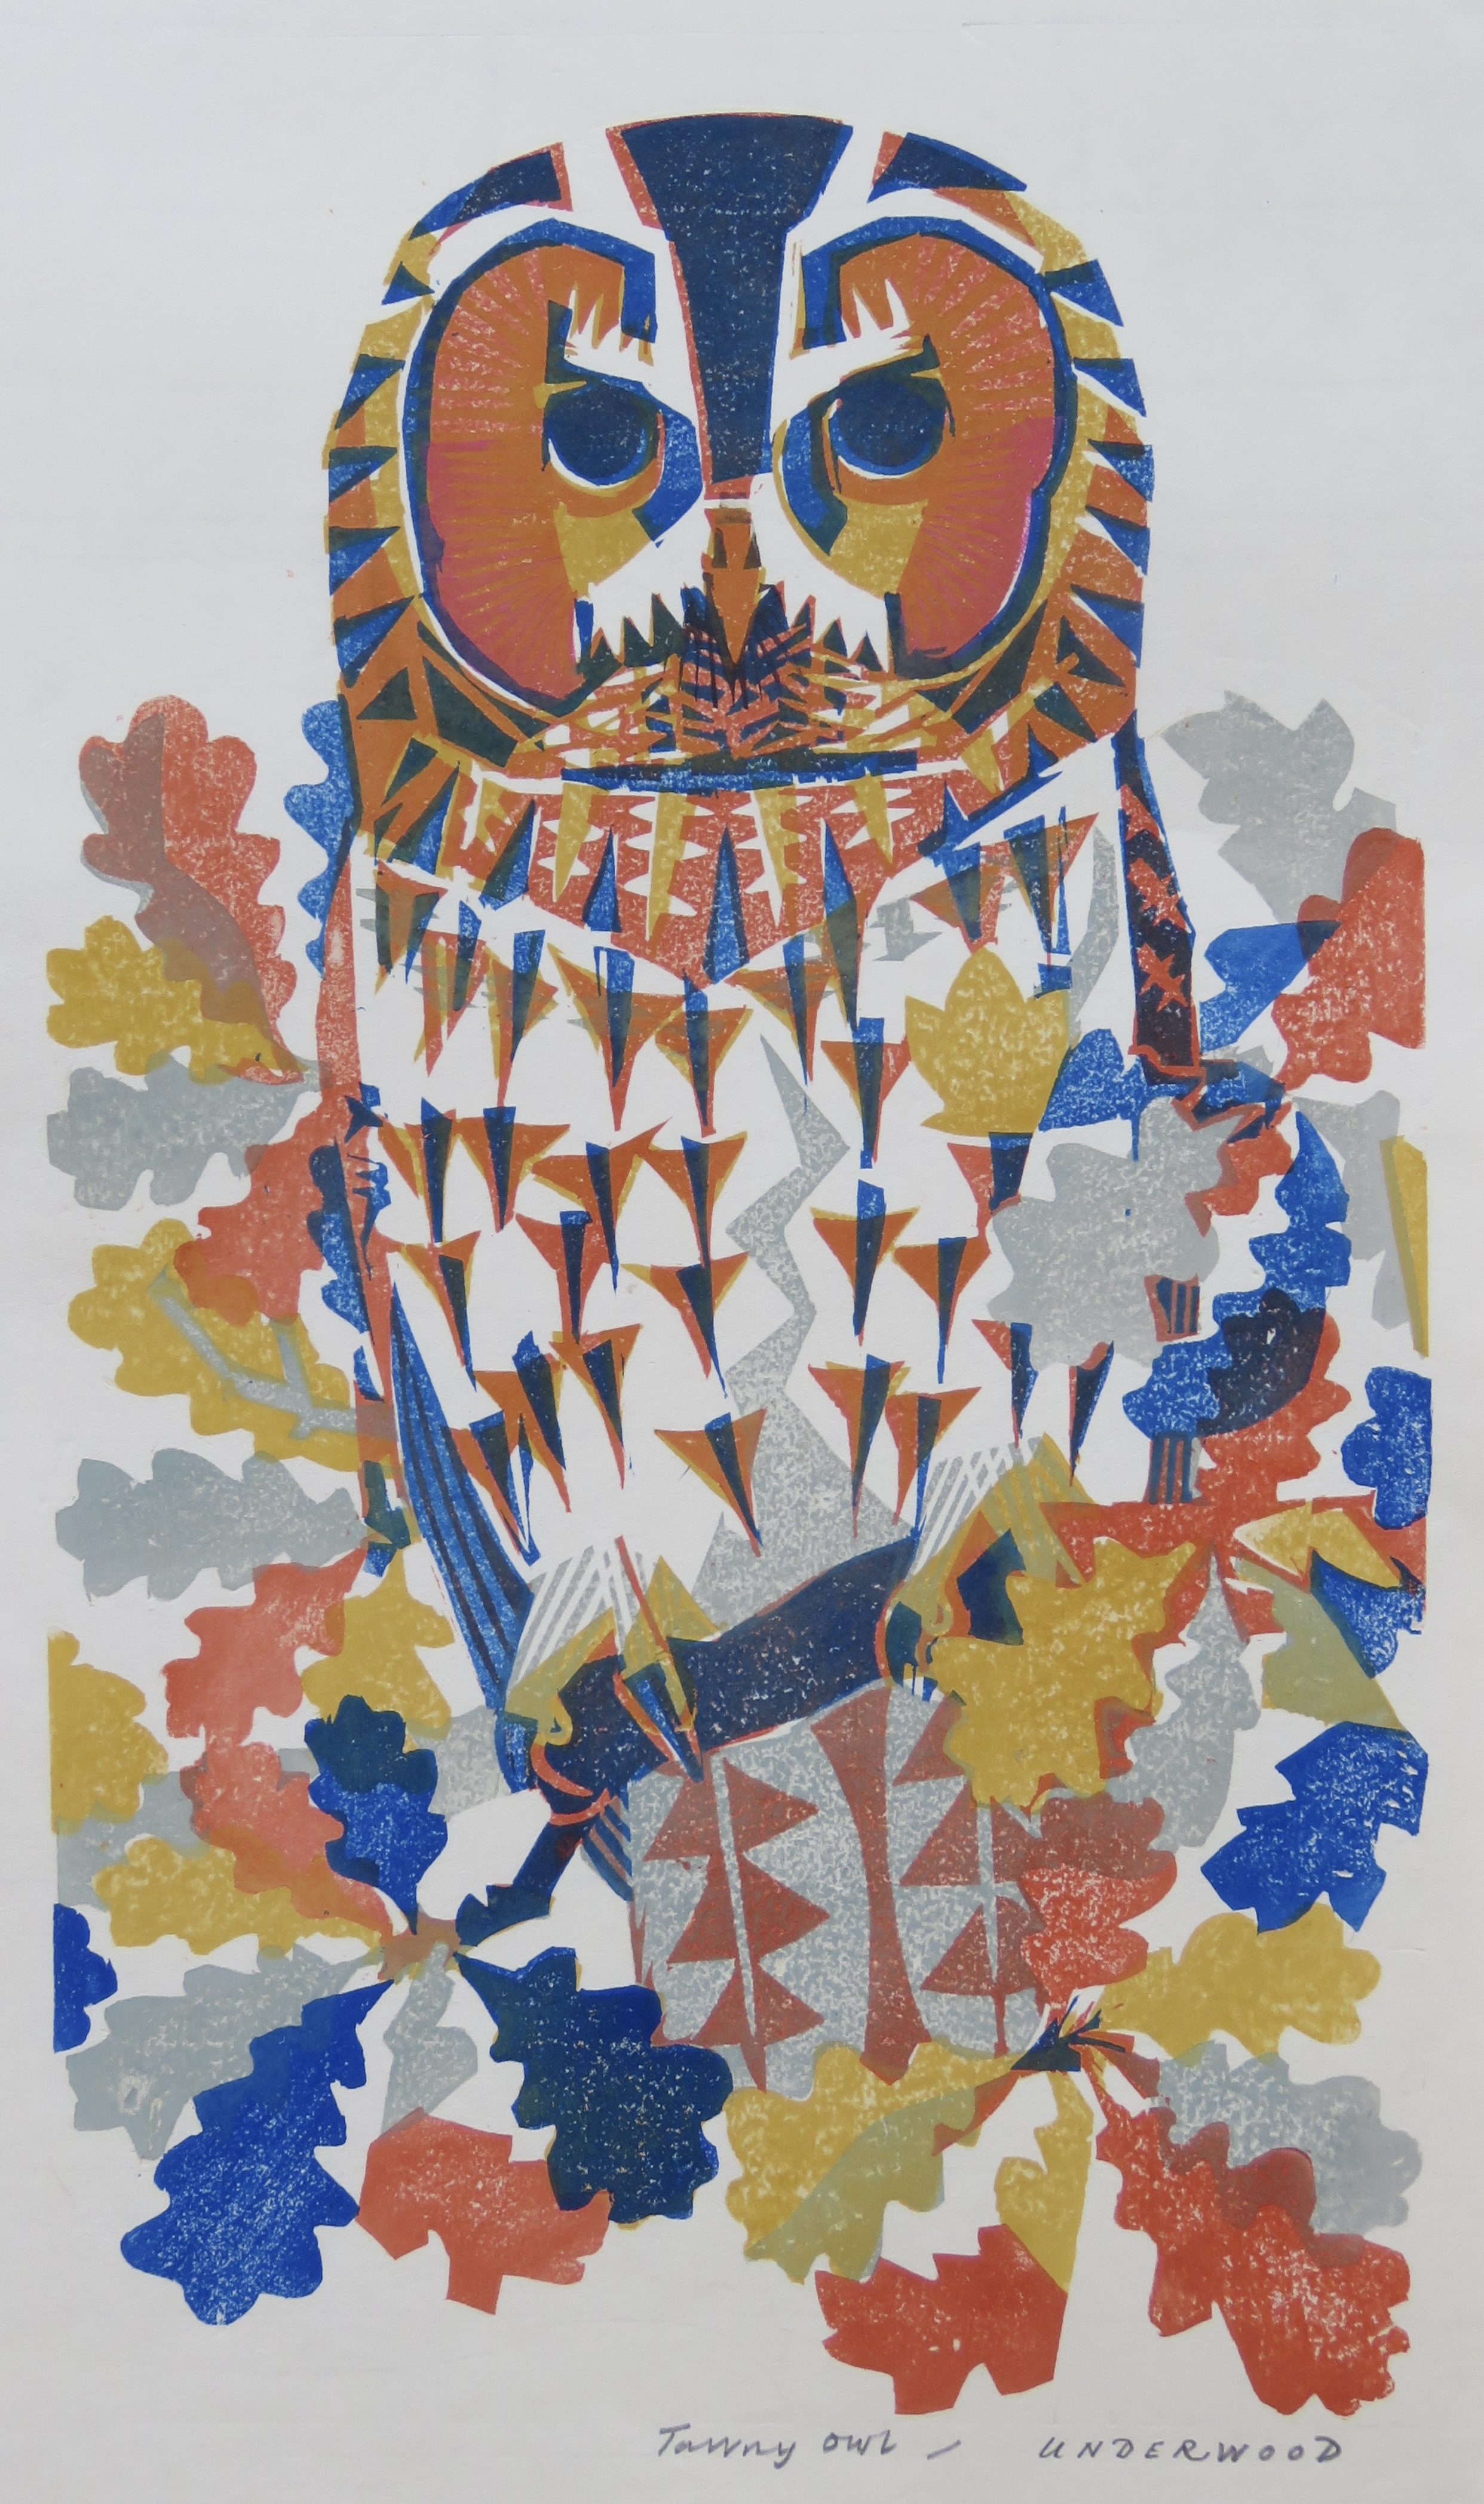   Tawny Owl, a woodblock print by Matt Underwood